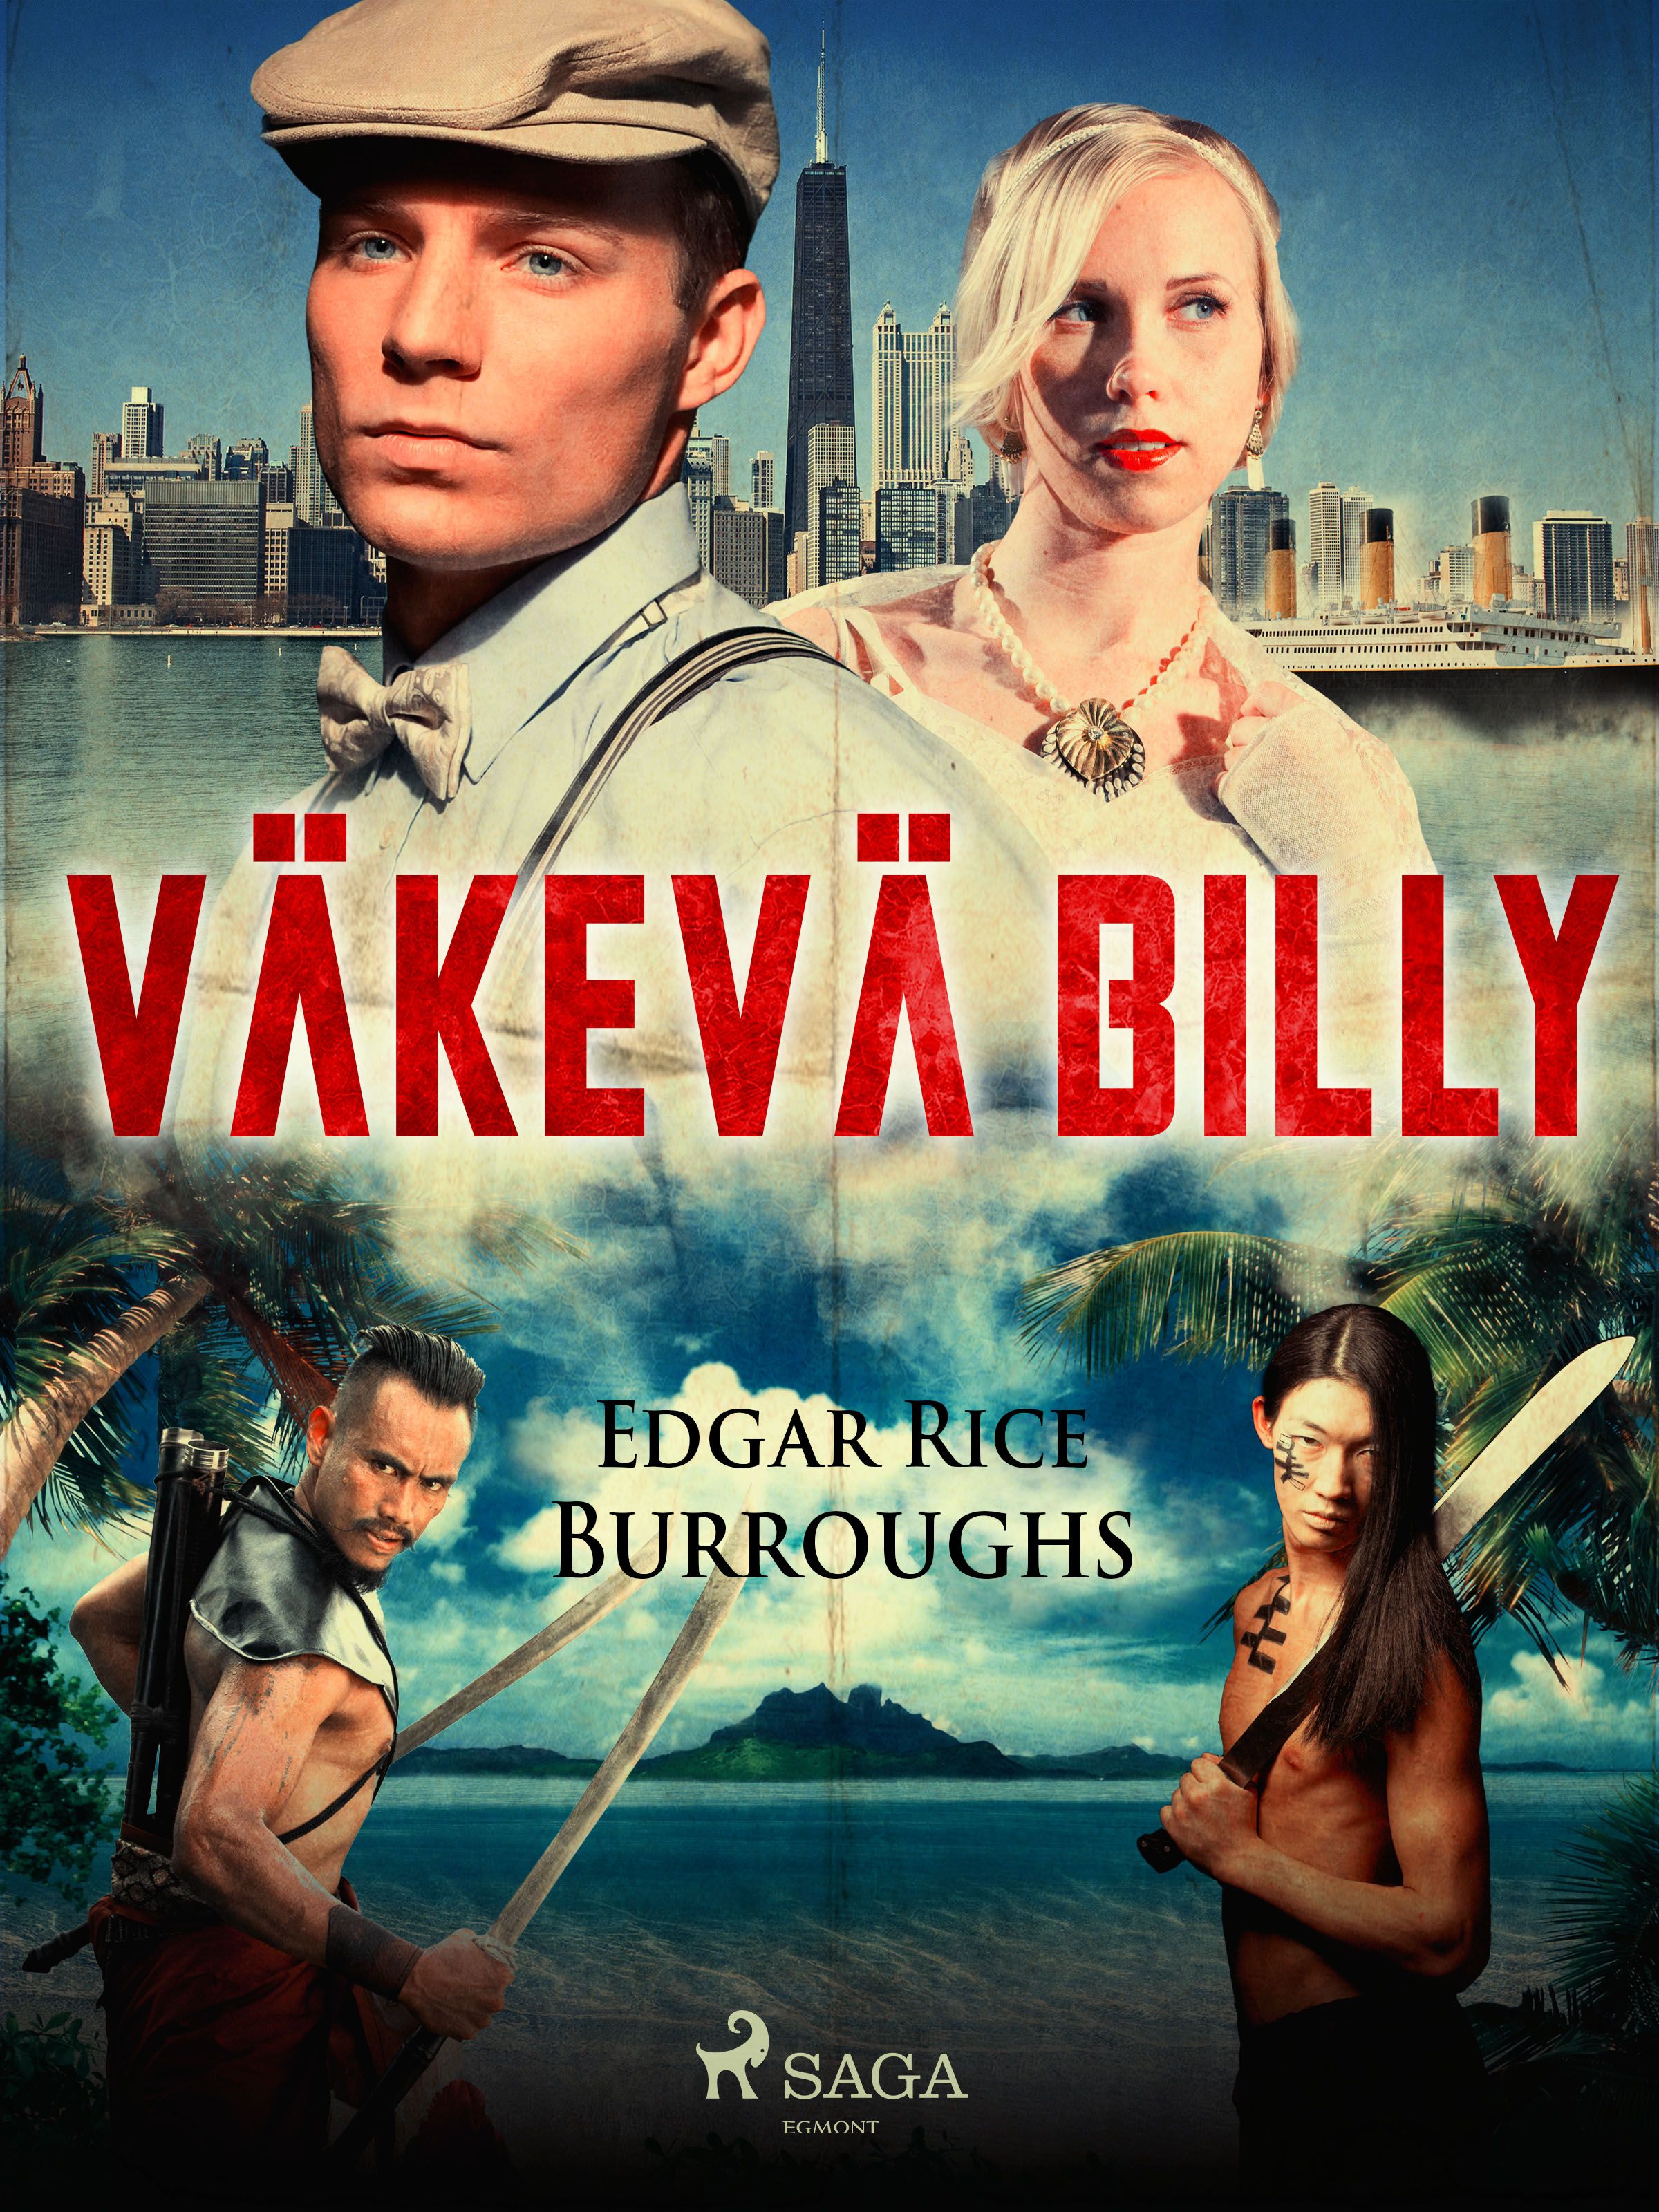 Väkevä Billy, eBook by Edgar Rice Burroughs